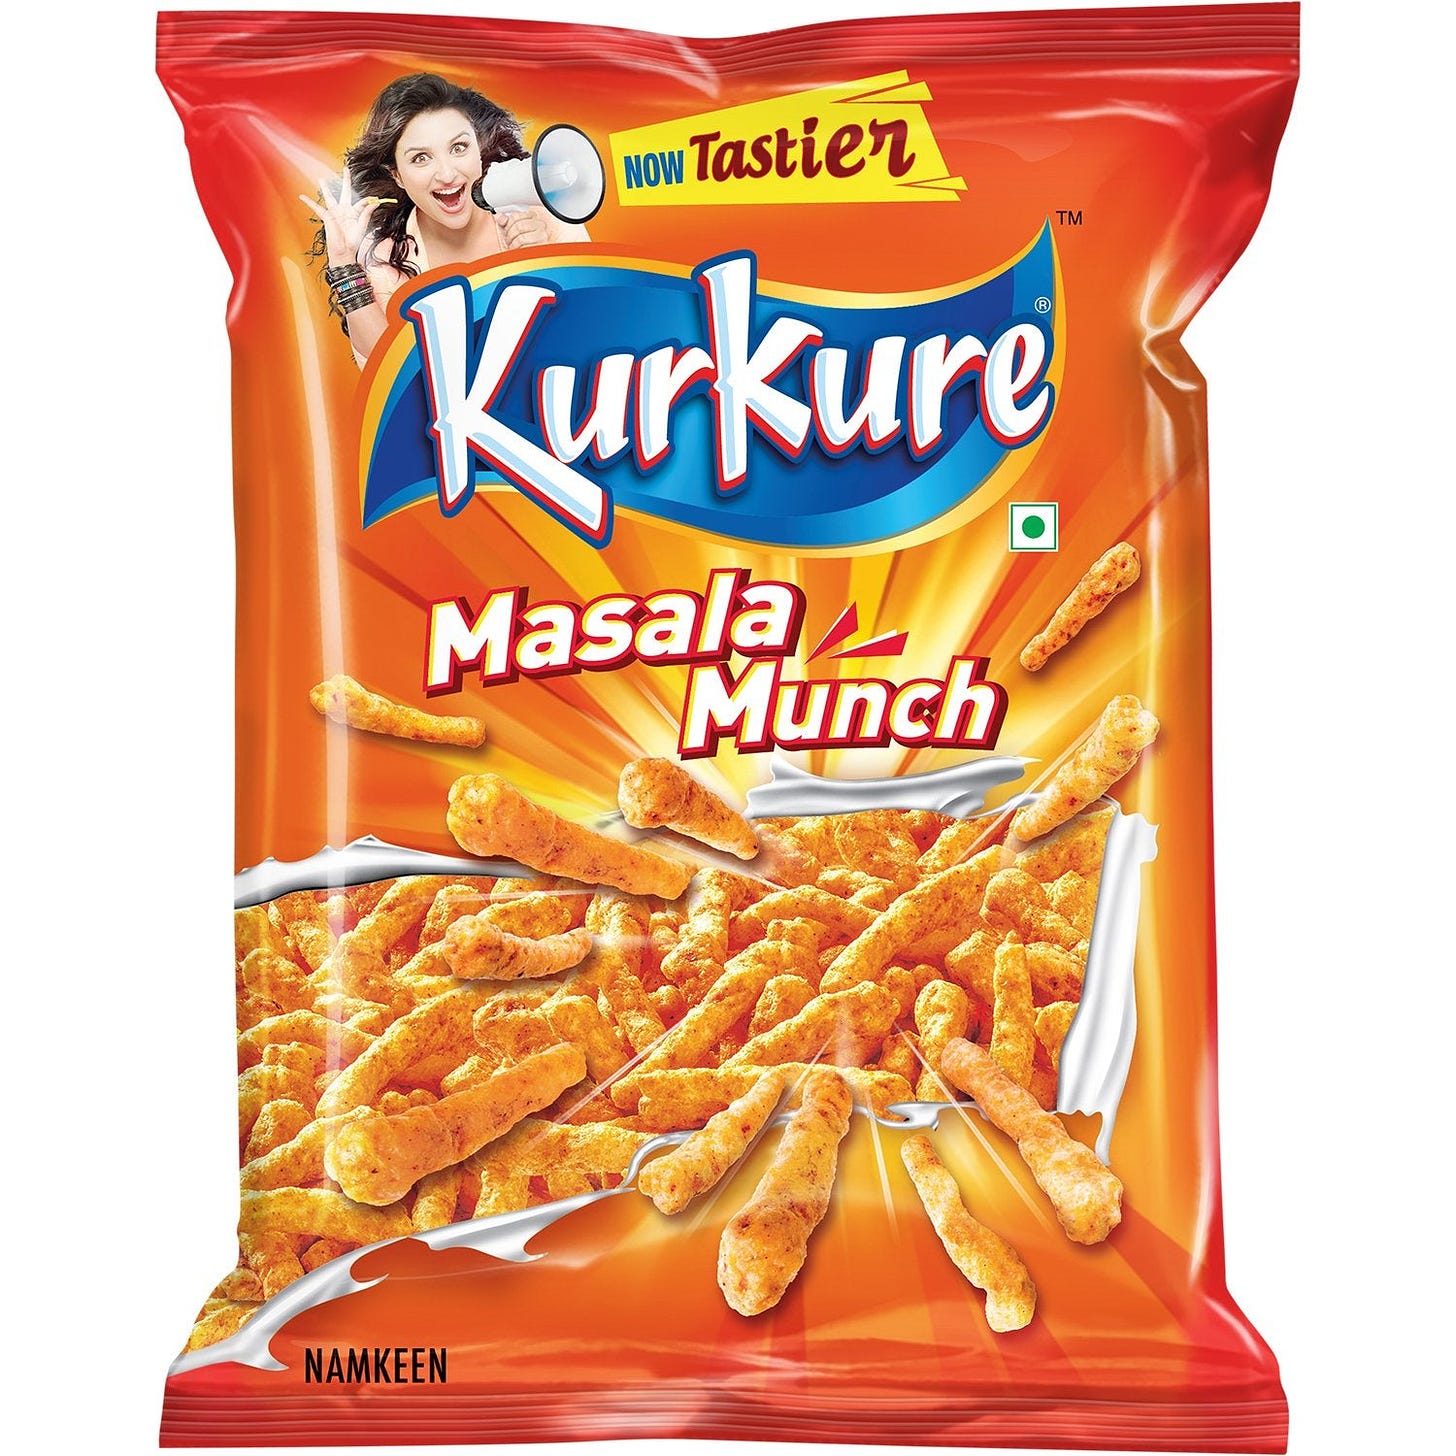 KURKURE MASALA MUNCH (India)